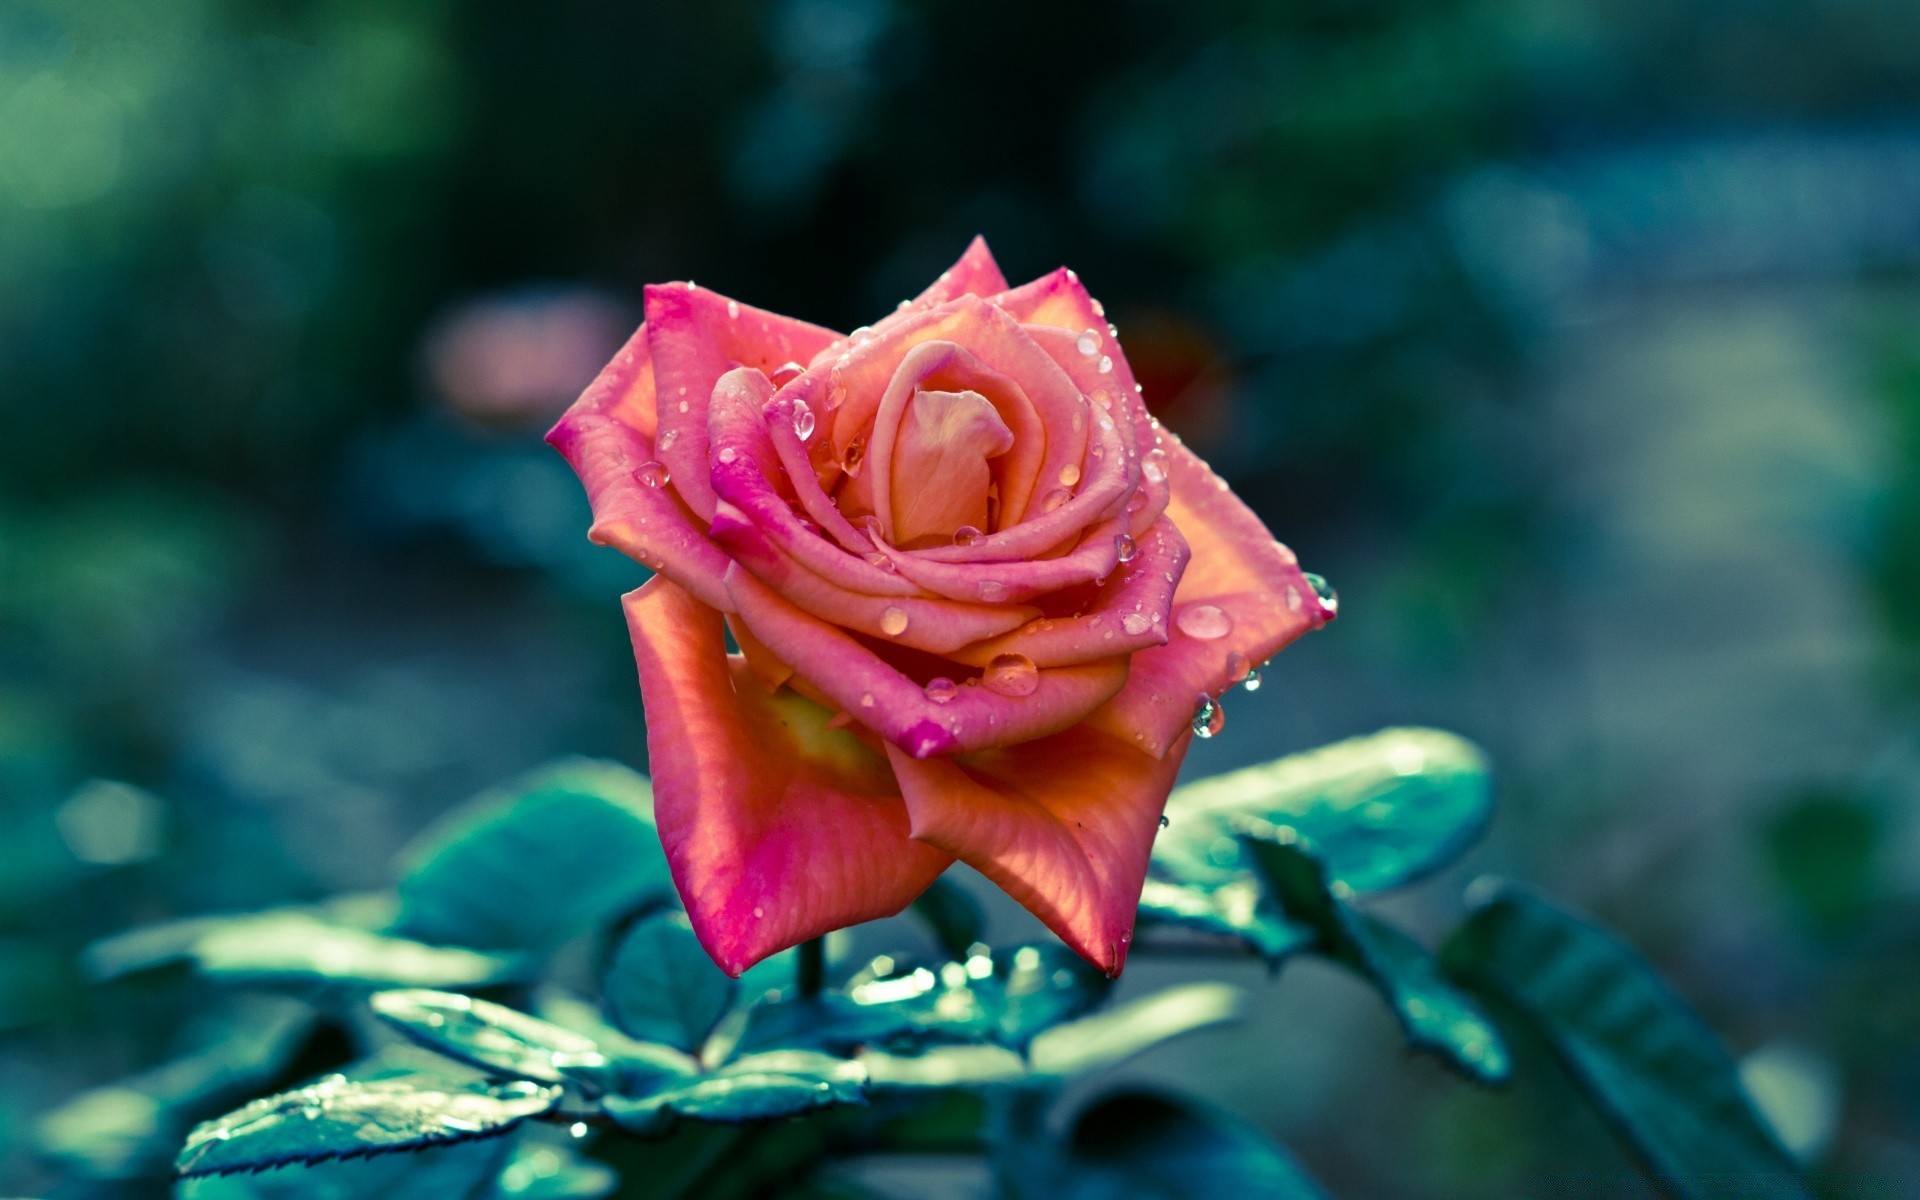 цветы цветок роза природа лепесток любовь сад романтика лист цветочные романтический флора блюминг свадьба красивые цвет на открытом воздухе нежный лето